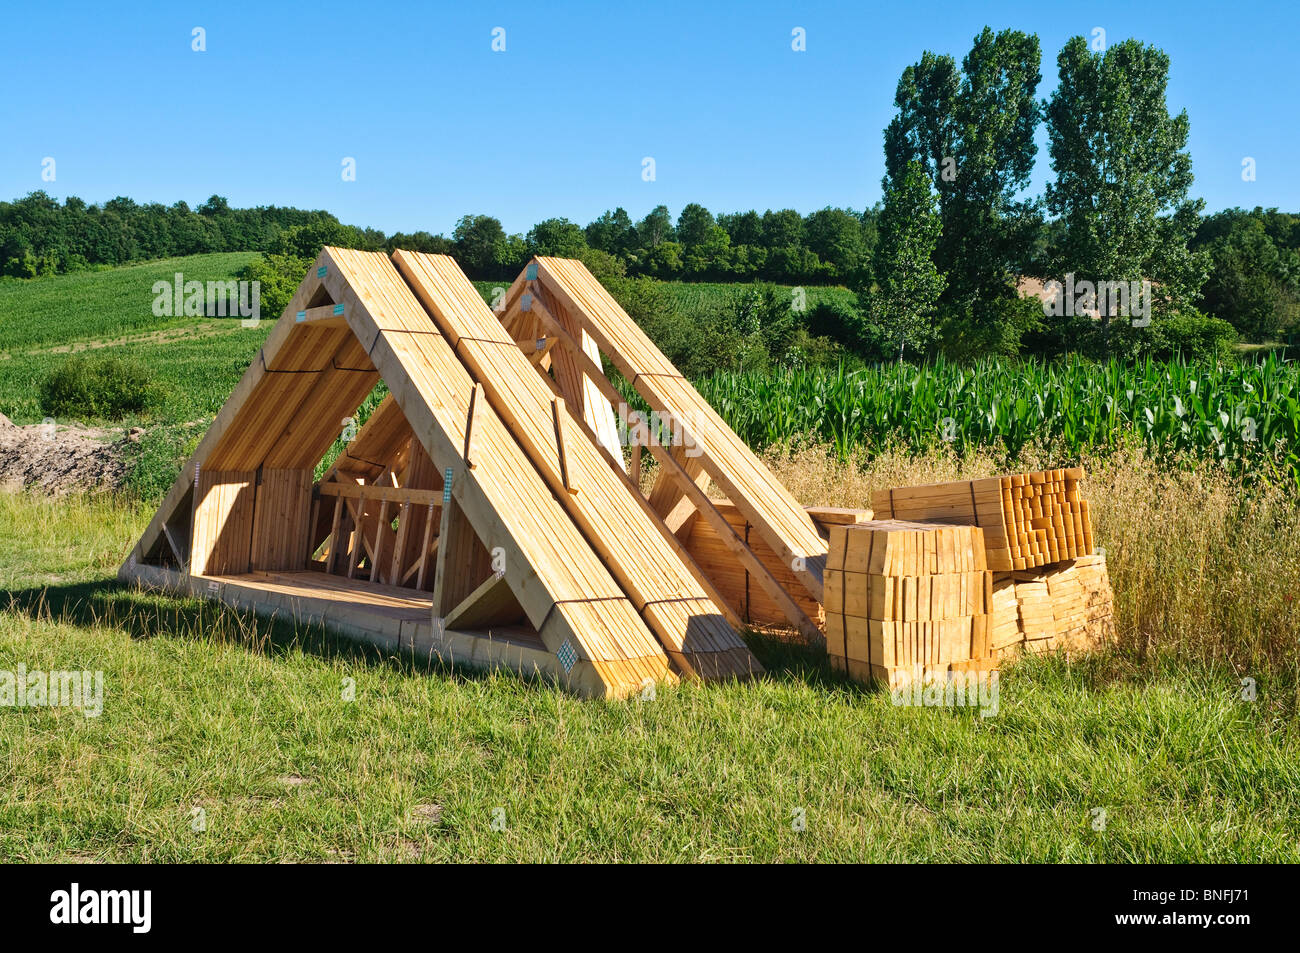 Vorgefertigte Dachbinder Holz für den Bau neuer Wohnungsbau auf Grüngürtel Website - Indre-et-Loire, Frankreich. Stockfoto